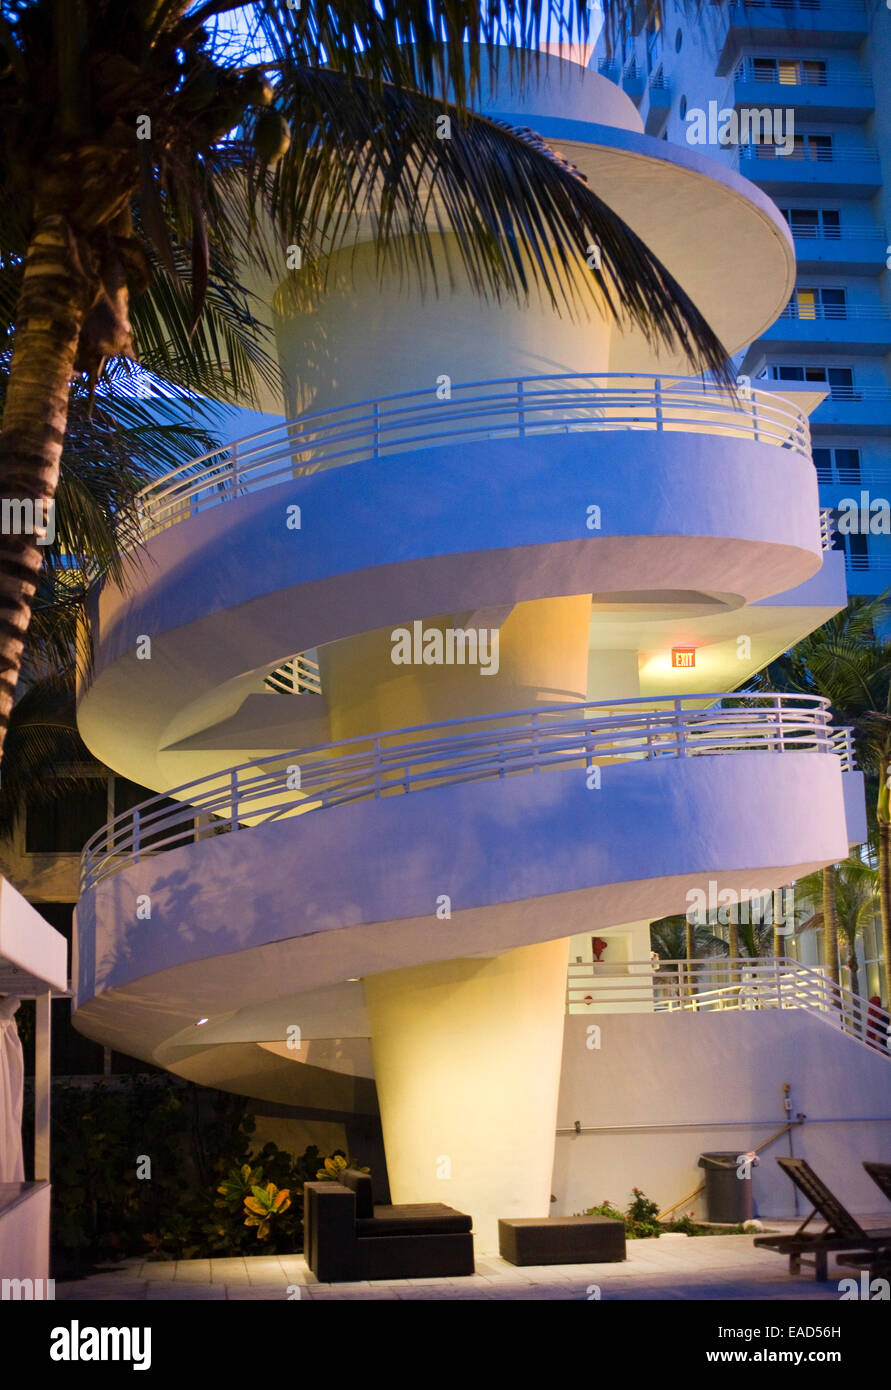 Exterior of Stairwell, Miami Beach, Florida Stock Photo